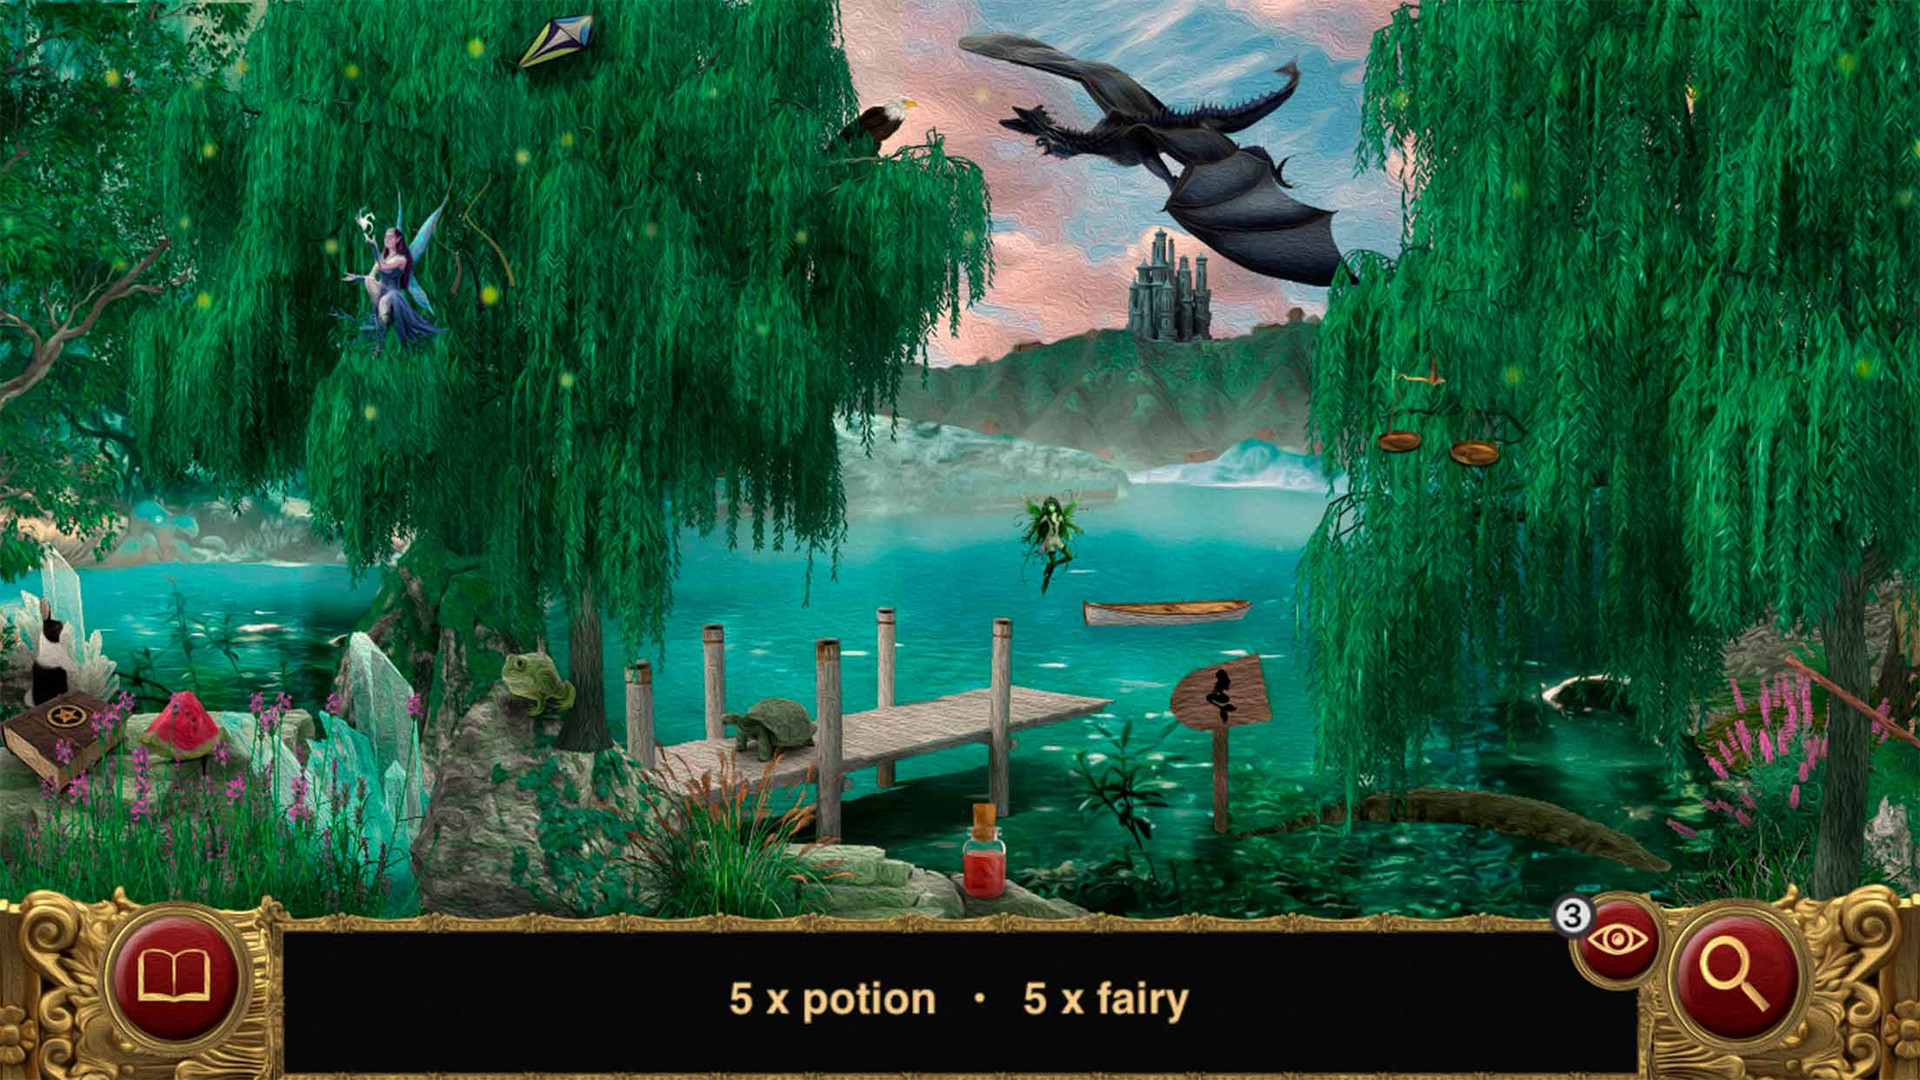 Hidden Objects - Sleeping Beauty - Puzzle Fairy Tales - Win/Mac - (Steam)